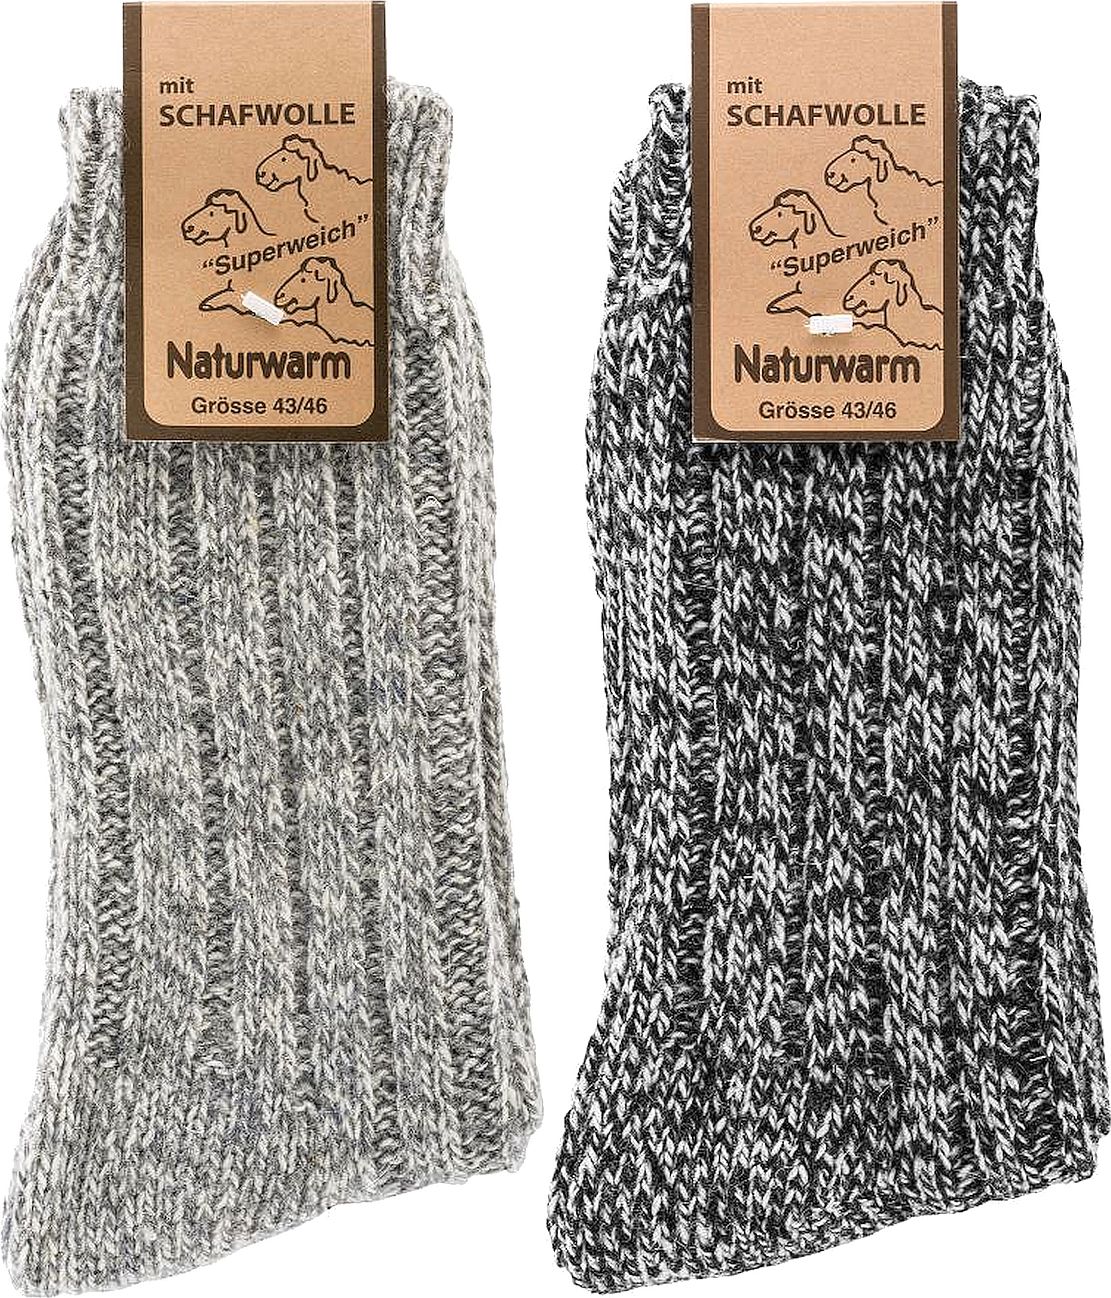 NORWEGER SOCKEN mit Schafwolle-softgewaschen  superweiche, vollgriffige Luxus-Qualität 2 Paar